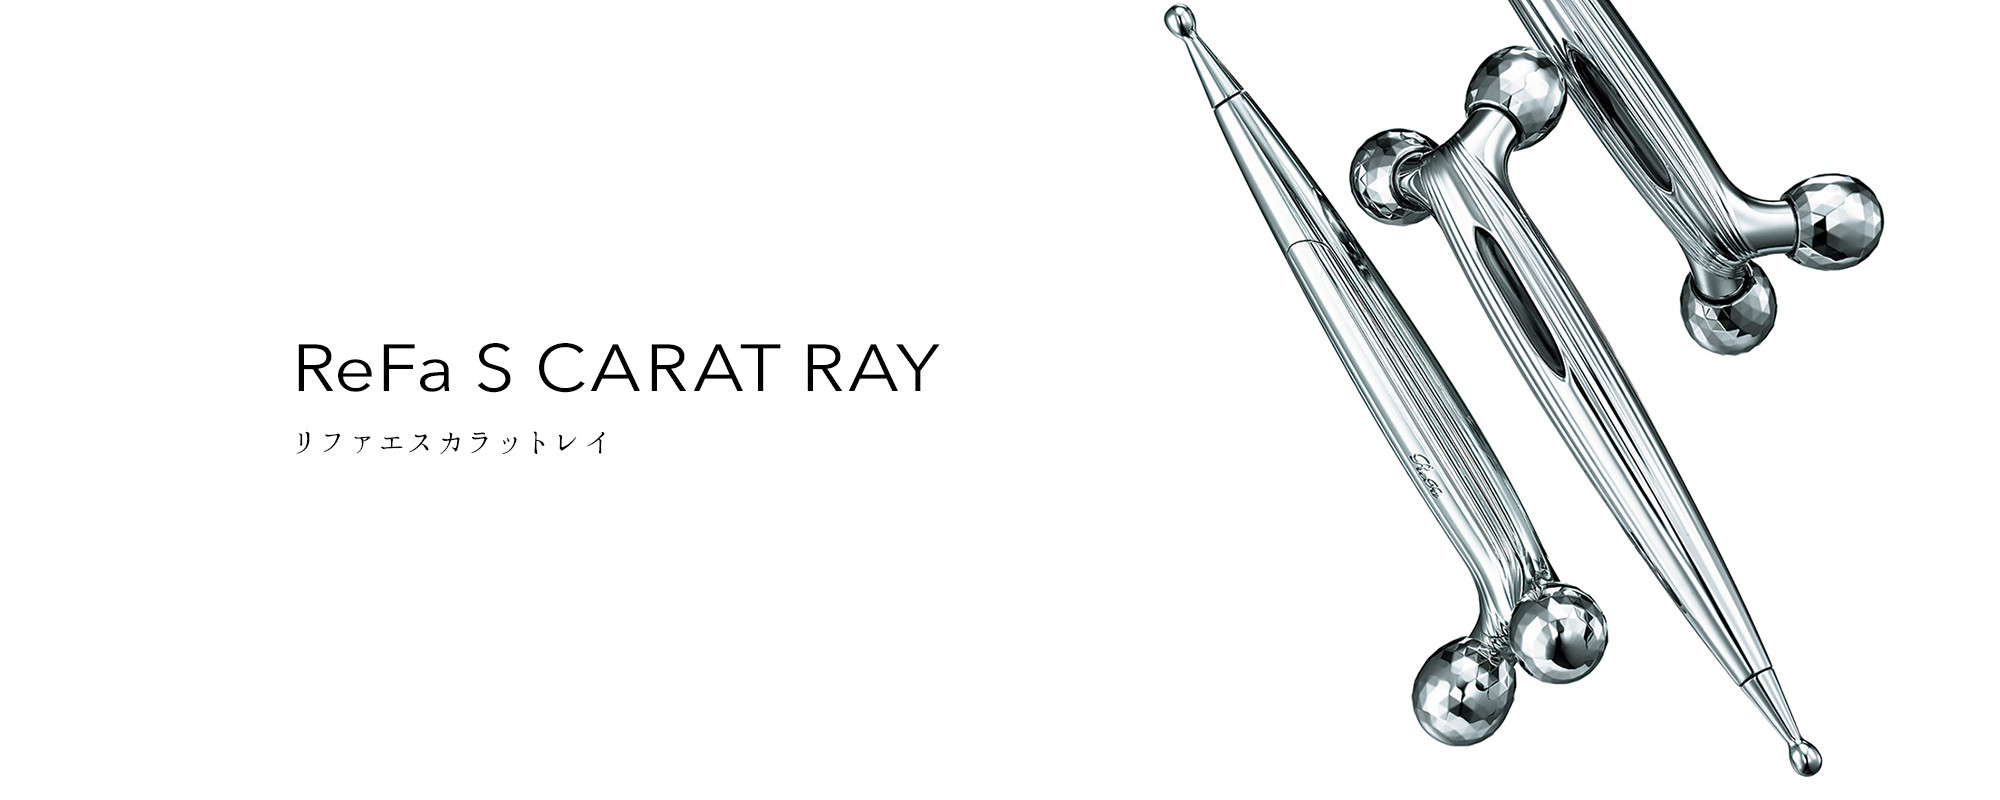 リファエスカラットレイ - ReFa S CARAT RAY | 商品情報 | ReFa（リファ）公式ブランドサイト